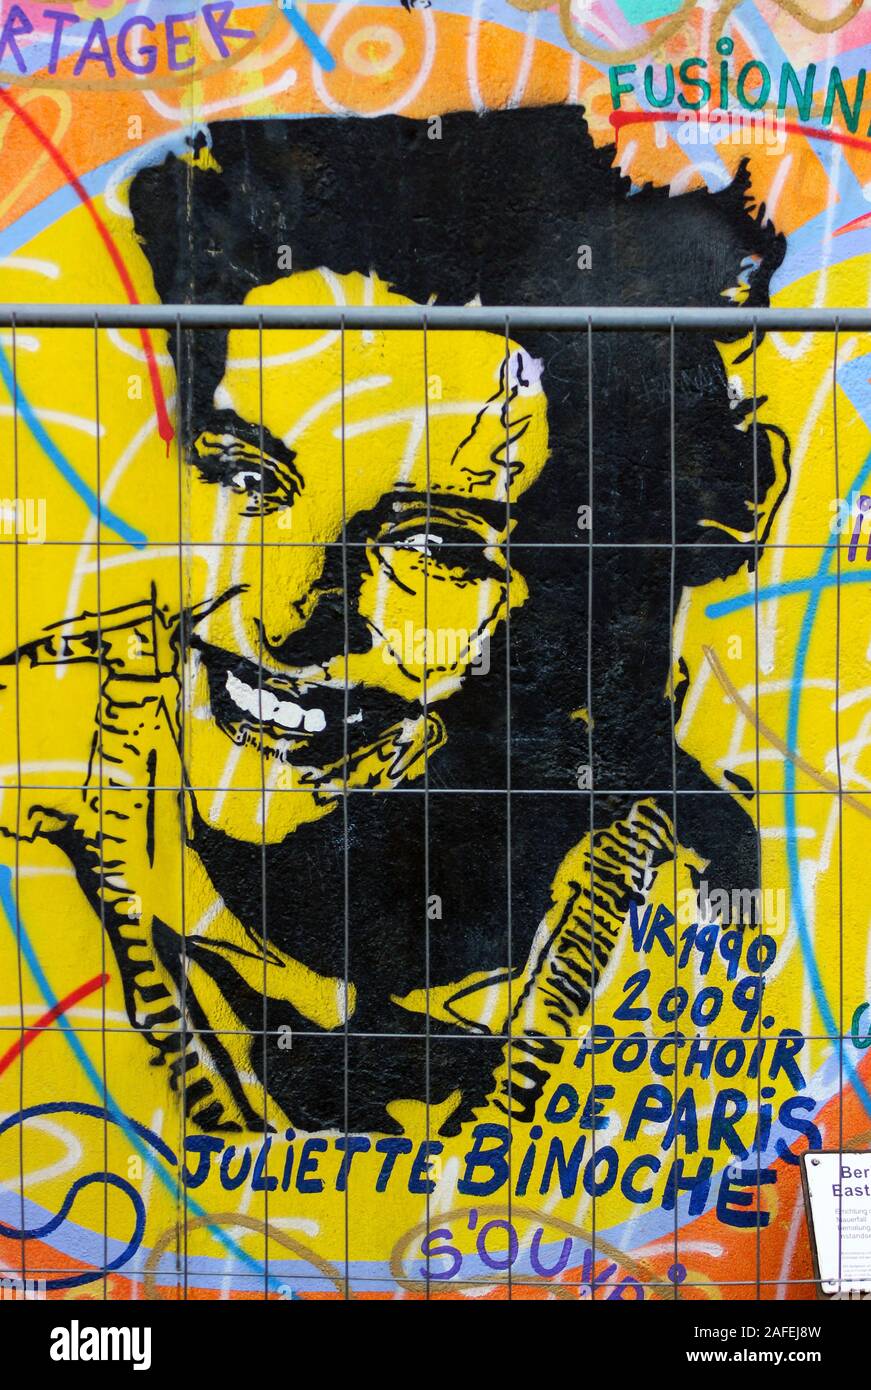 Juliette Binoche stencil graffiti on Berlin wall at East Side Gallery in Berlin, Germany Stock Photo